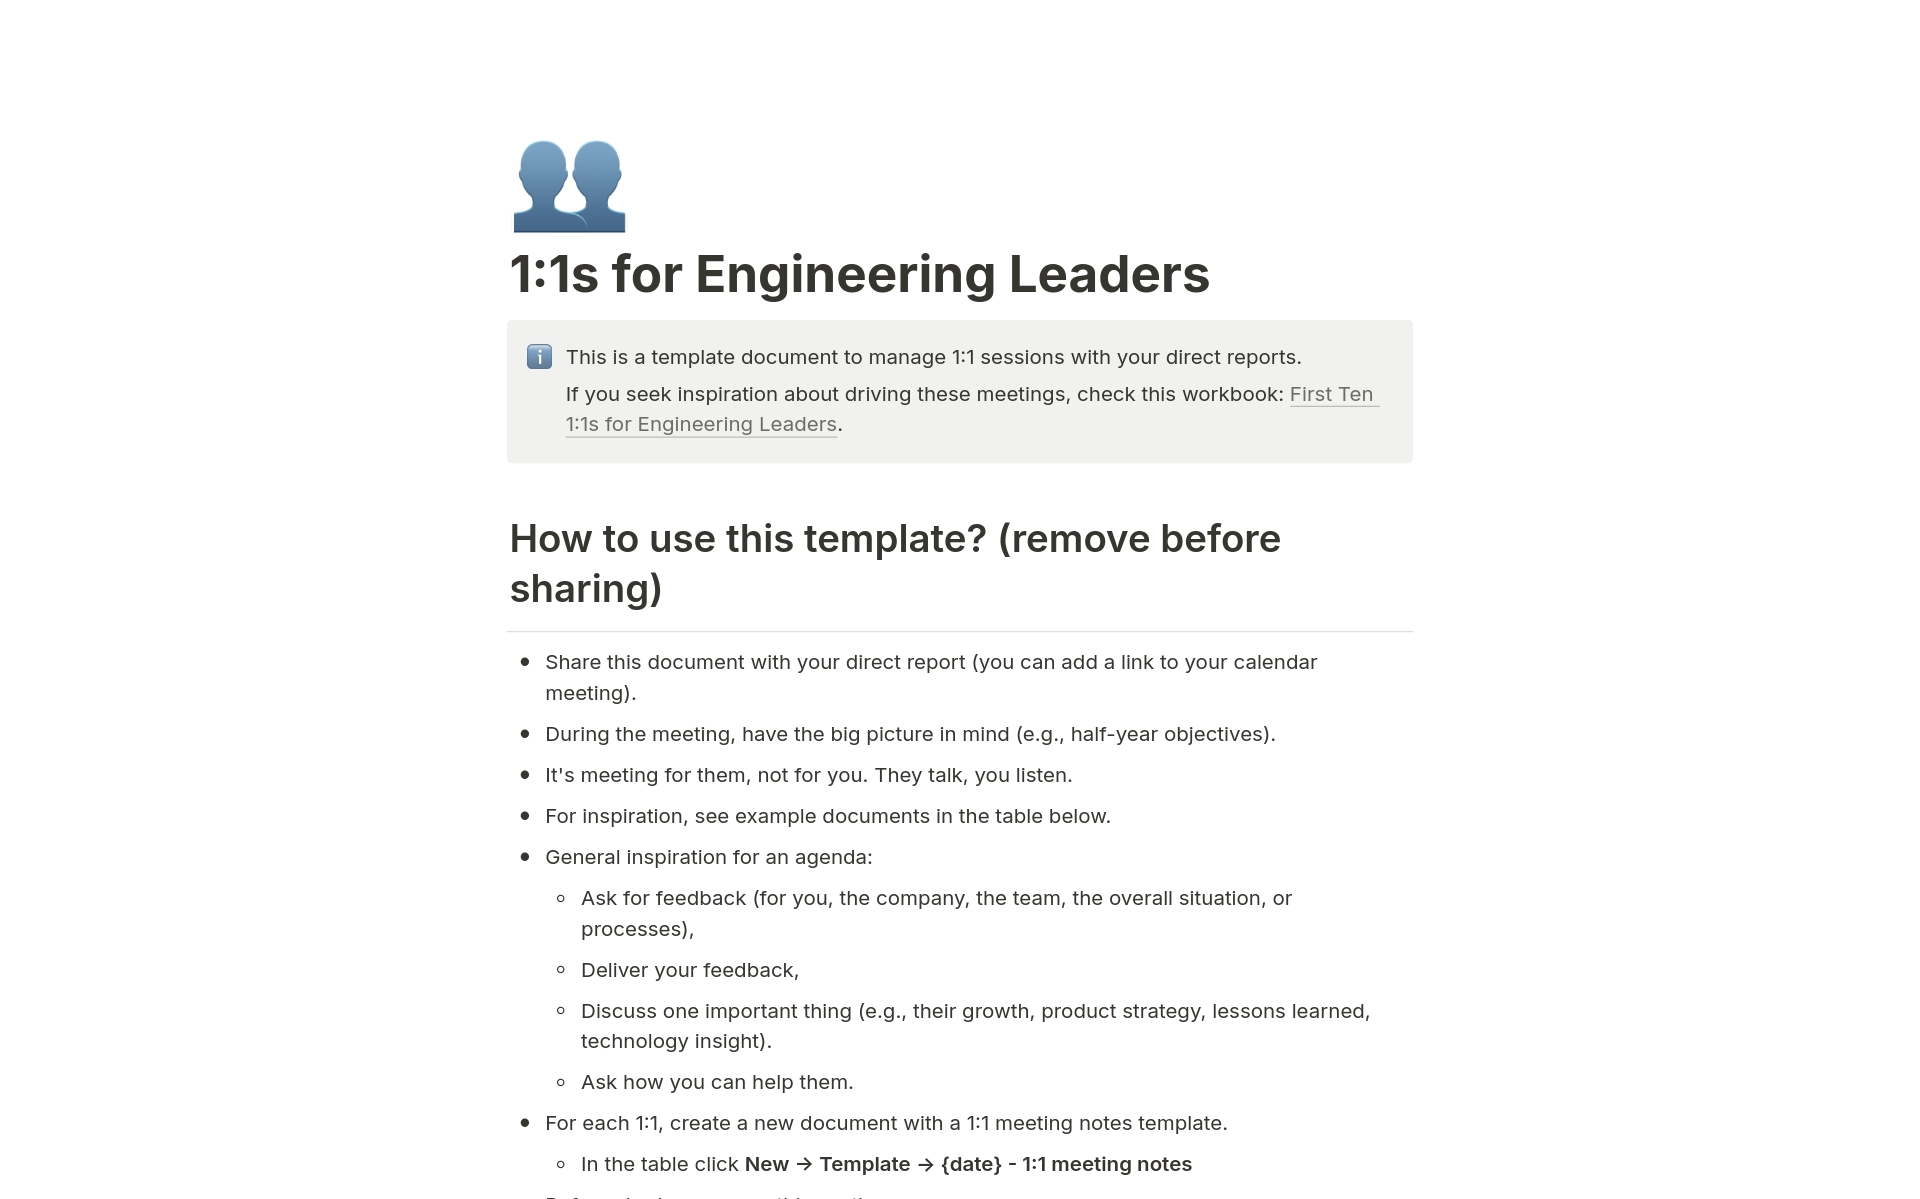 Vista previa de una plantilla para 1:1s for Engineering Leaders